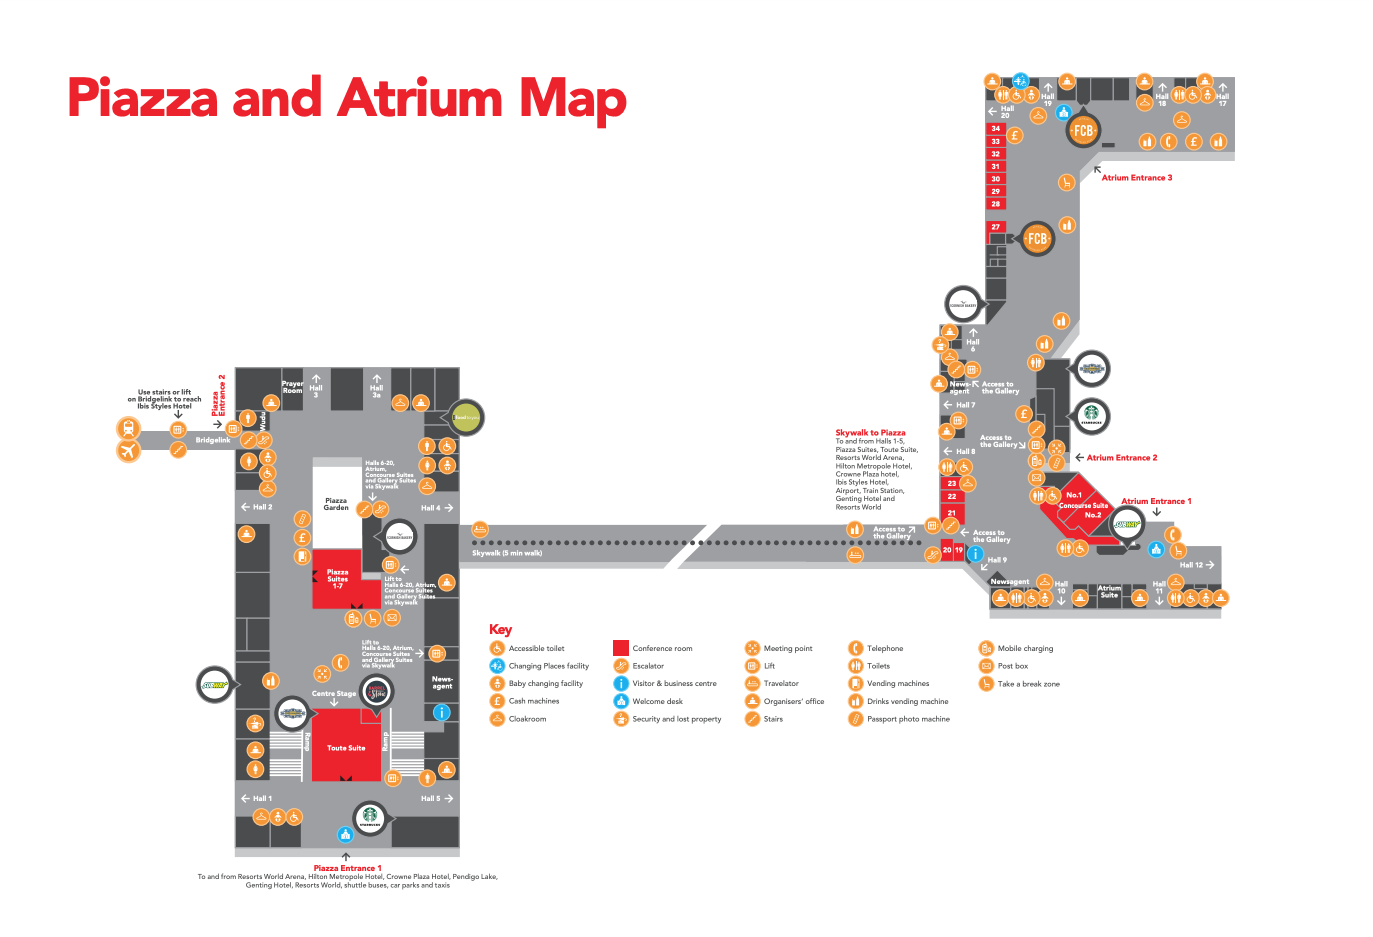 Piazza & Atrium Map - The NEC